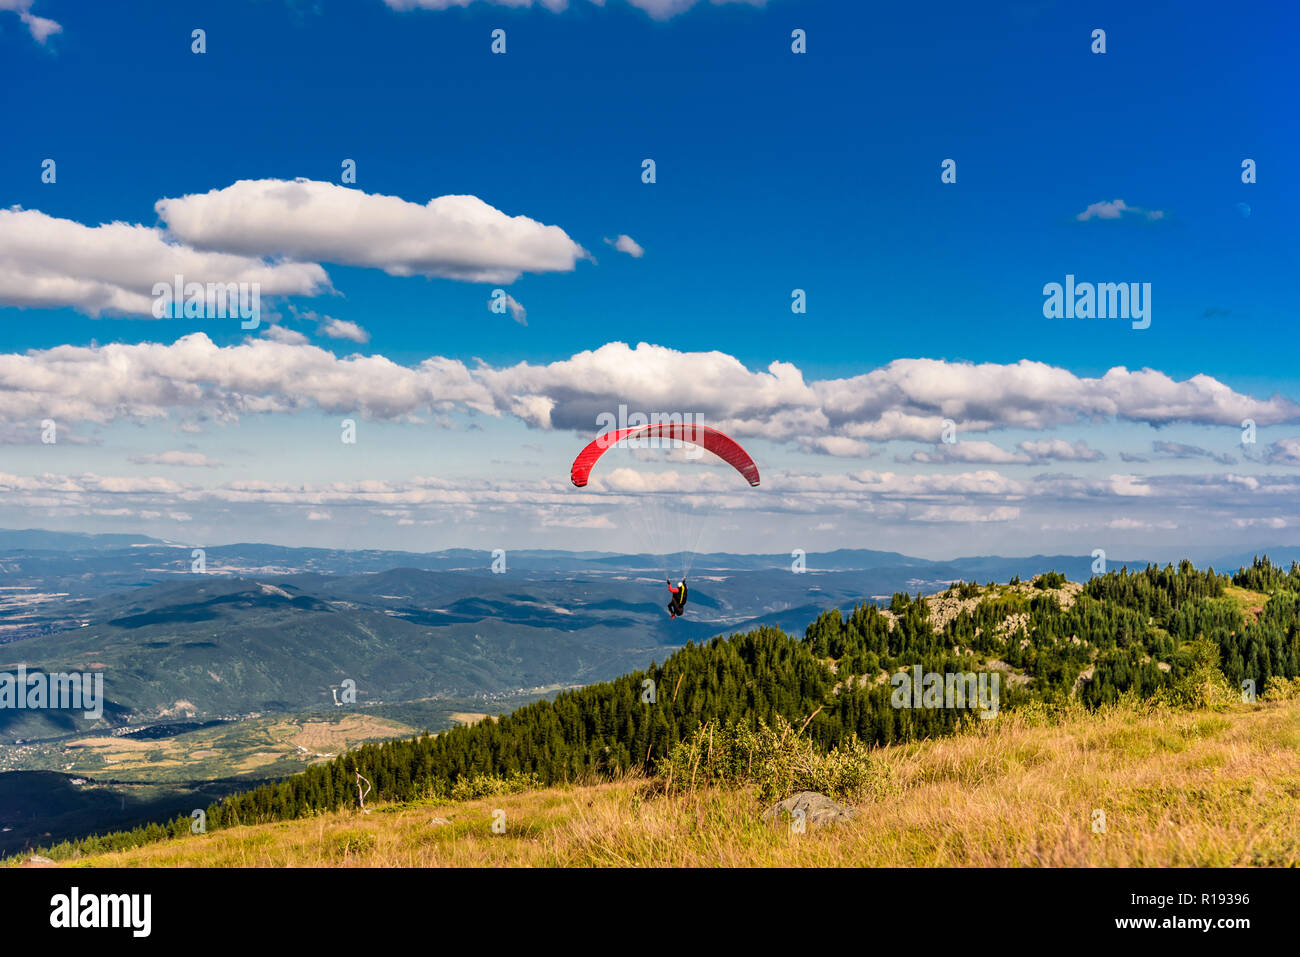 Parasailing von einem Berg - einzelne rote Rutsche nach unten gleiten aus  den Hügeln des Vitosha Berges in Bulgarien - populäre parasailing Lage  Stockfotografie - Alamy